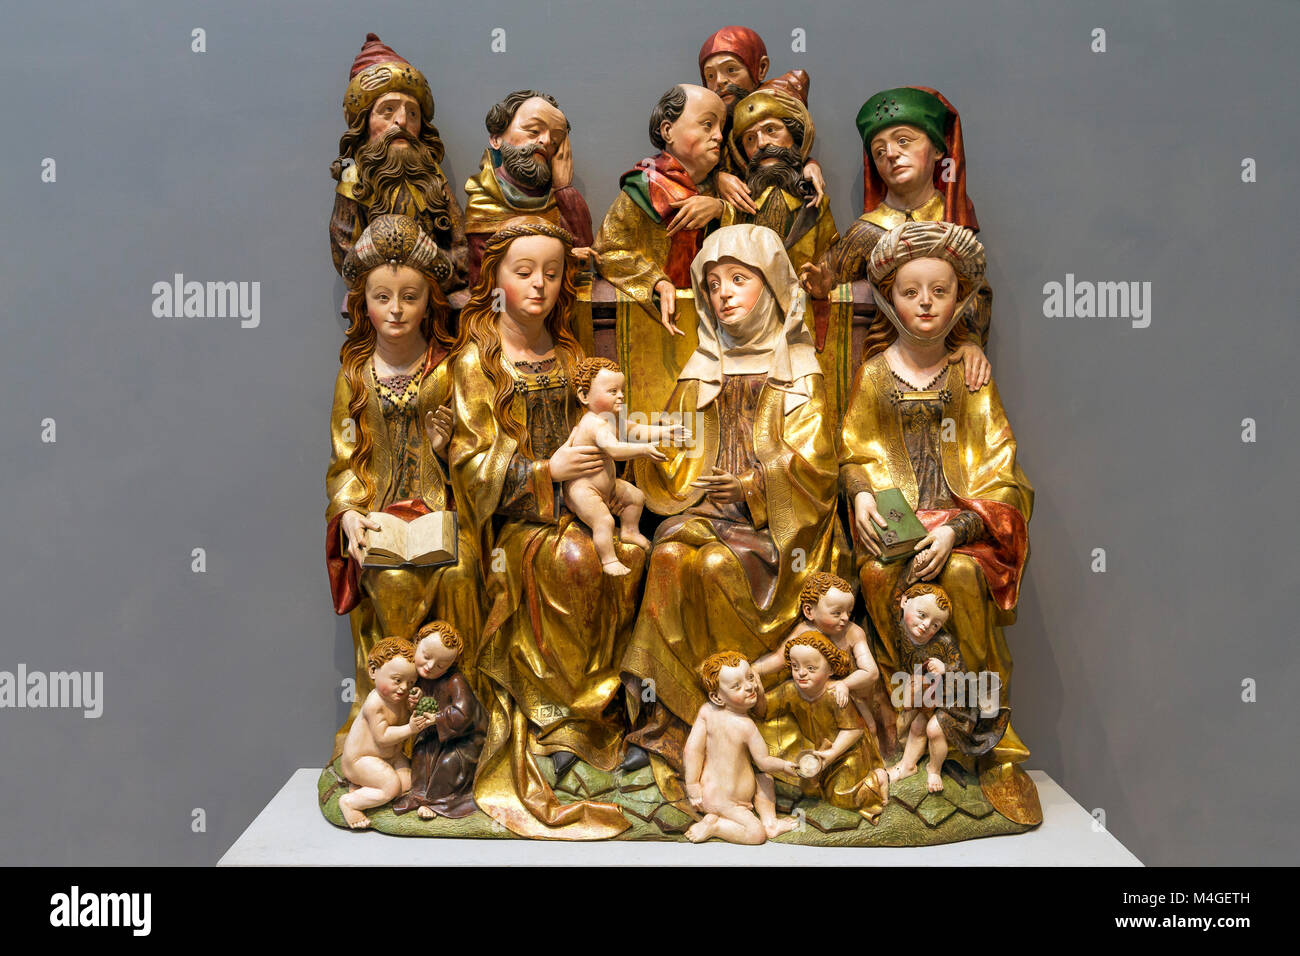 Die Heilige Sippe, Süddeutsche, 15. Jahrhundert, Holz-, Carving, National Gallery, Washington DC, USA, Nordamerika Stockfoto